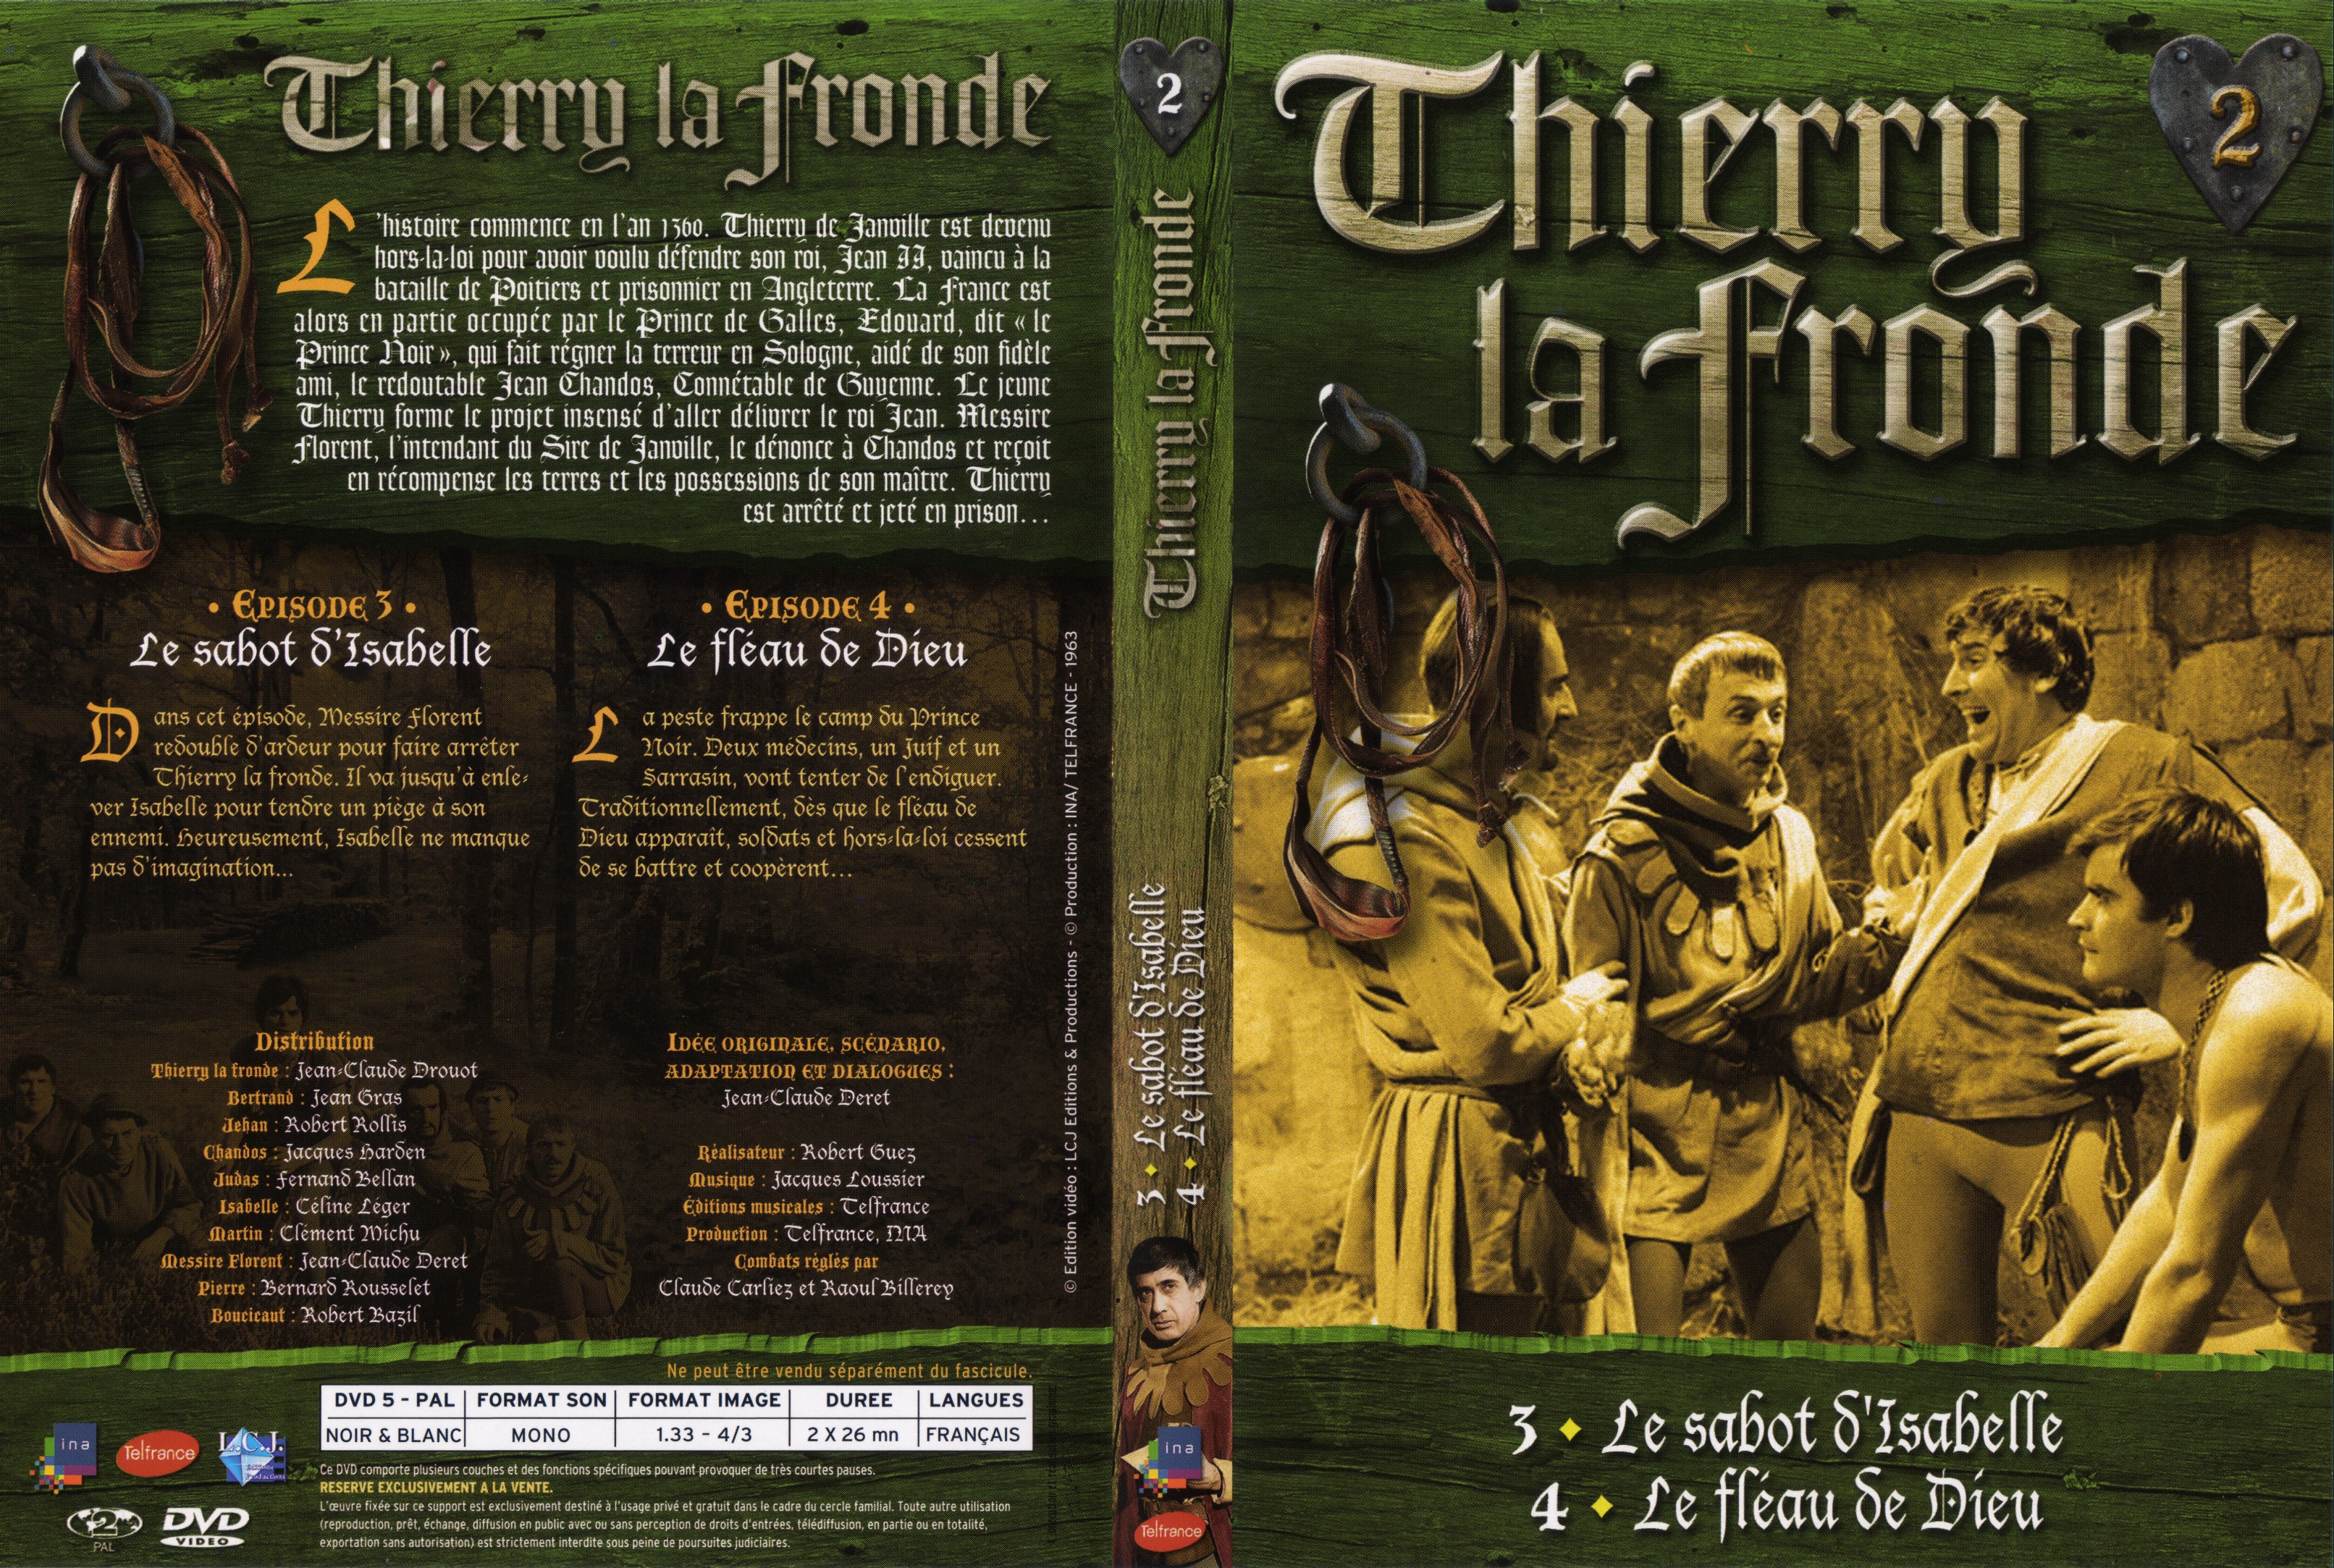 Jaquette DVD Thierry la Fronde vol 02